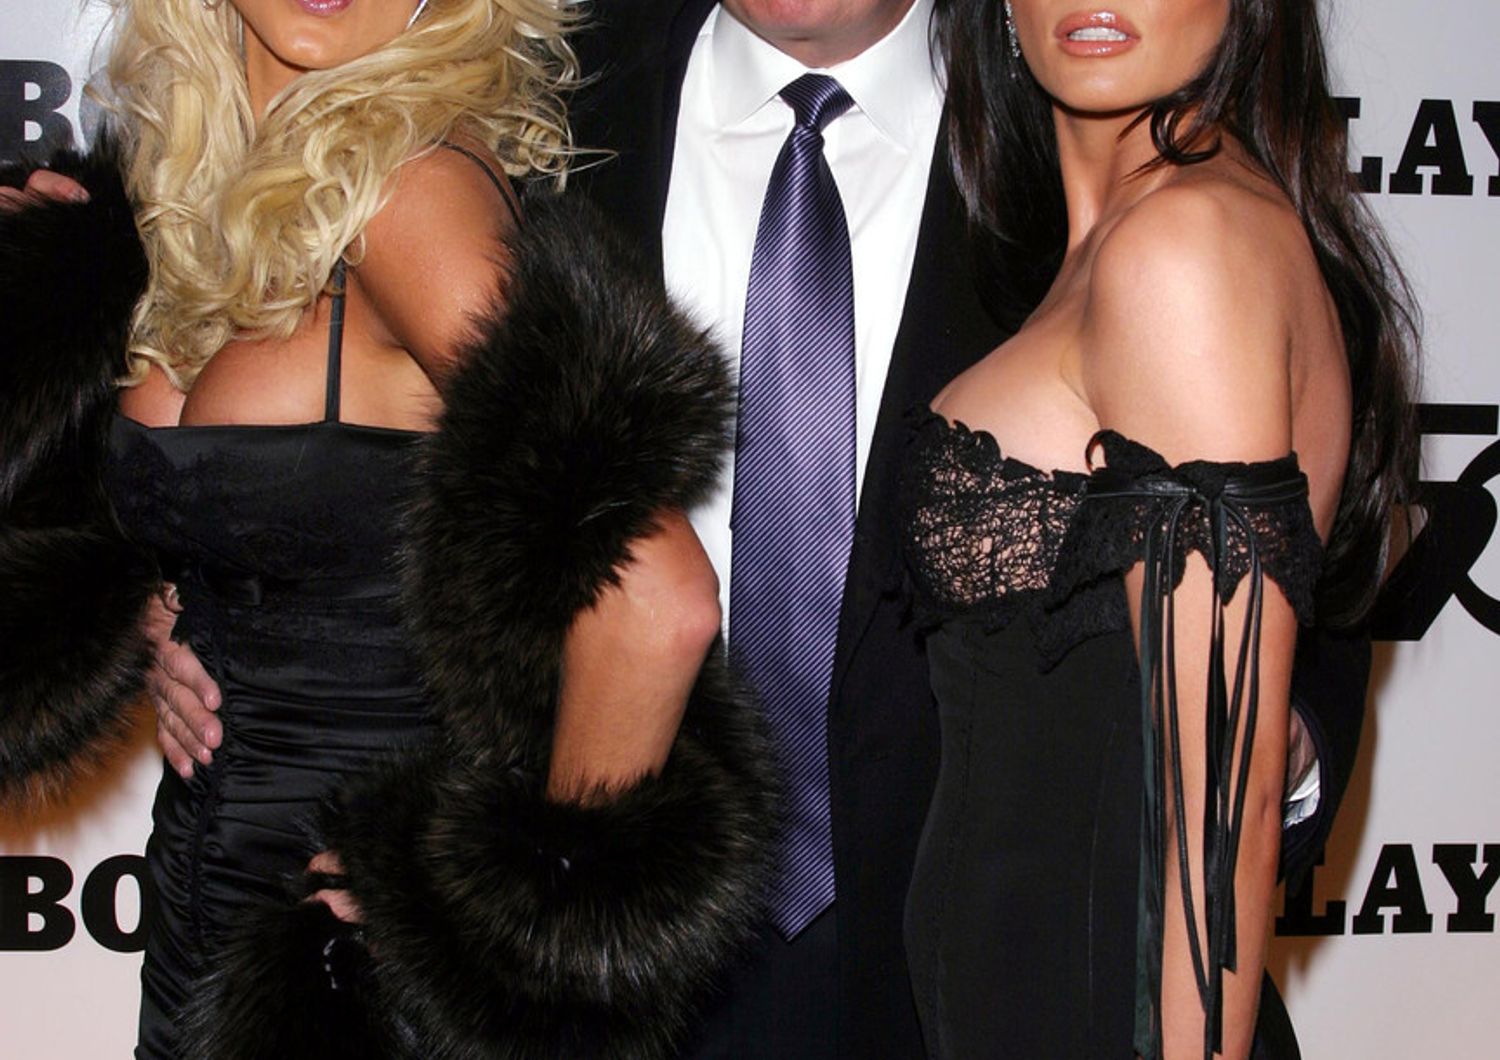 &nbsp;Donald Trump con la playmate Victoria Silvestedt e Melania (all'epoca Knauss) alla festa per i 50 anni di Playboy nel 2003, due anni prima di sposare la ex modella slovena